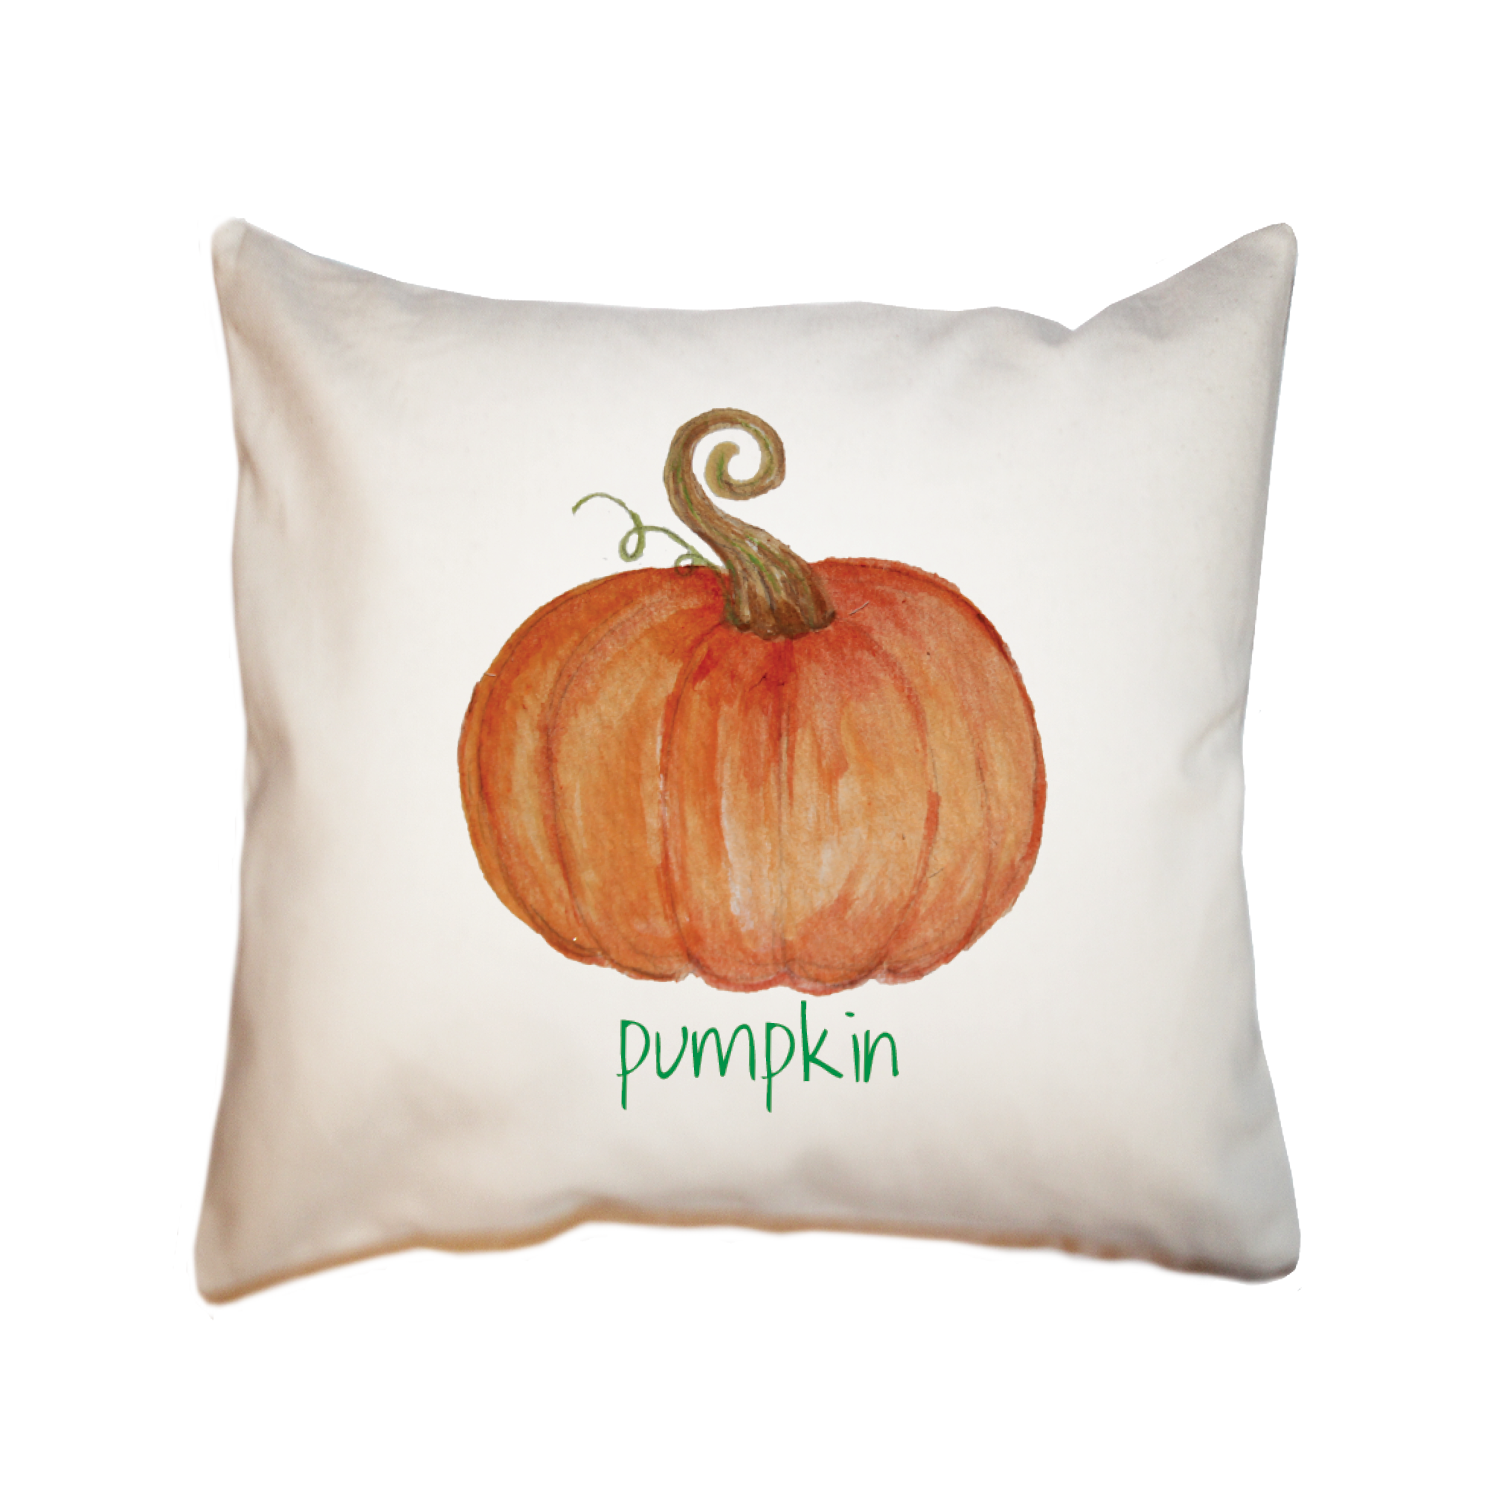 Pumpkin with pumpkin text square pillow